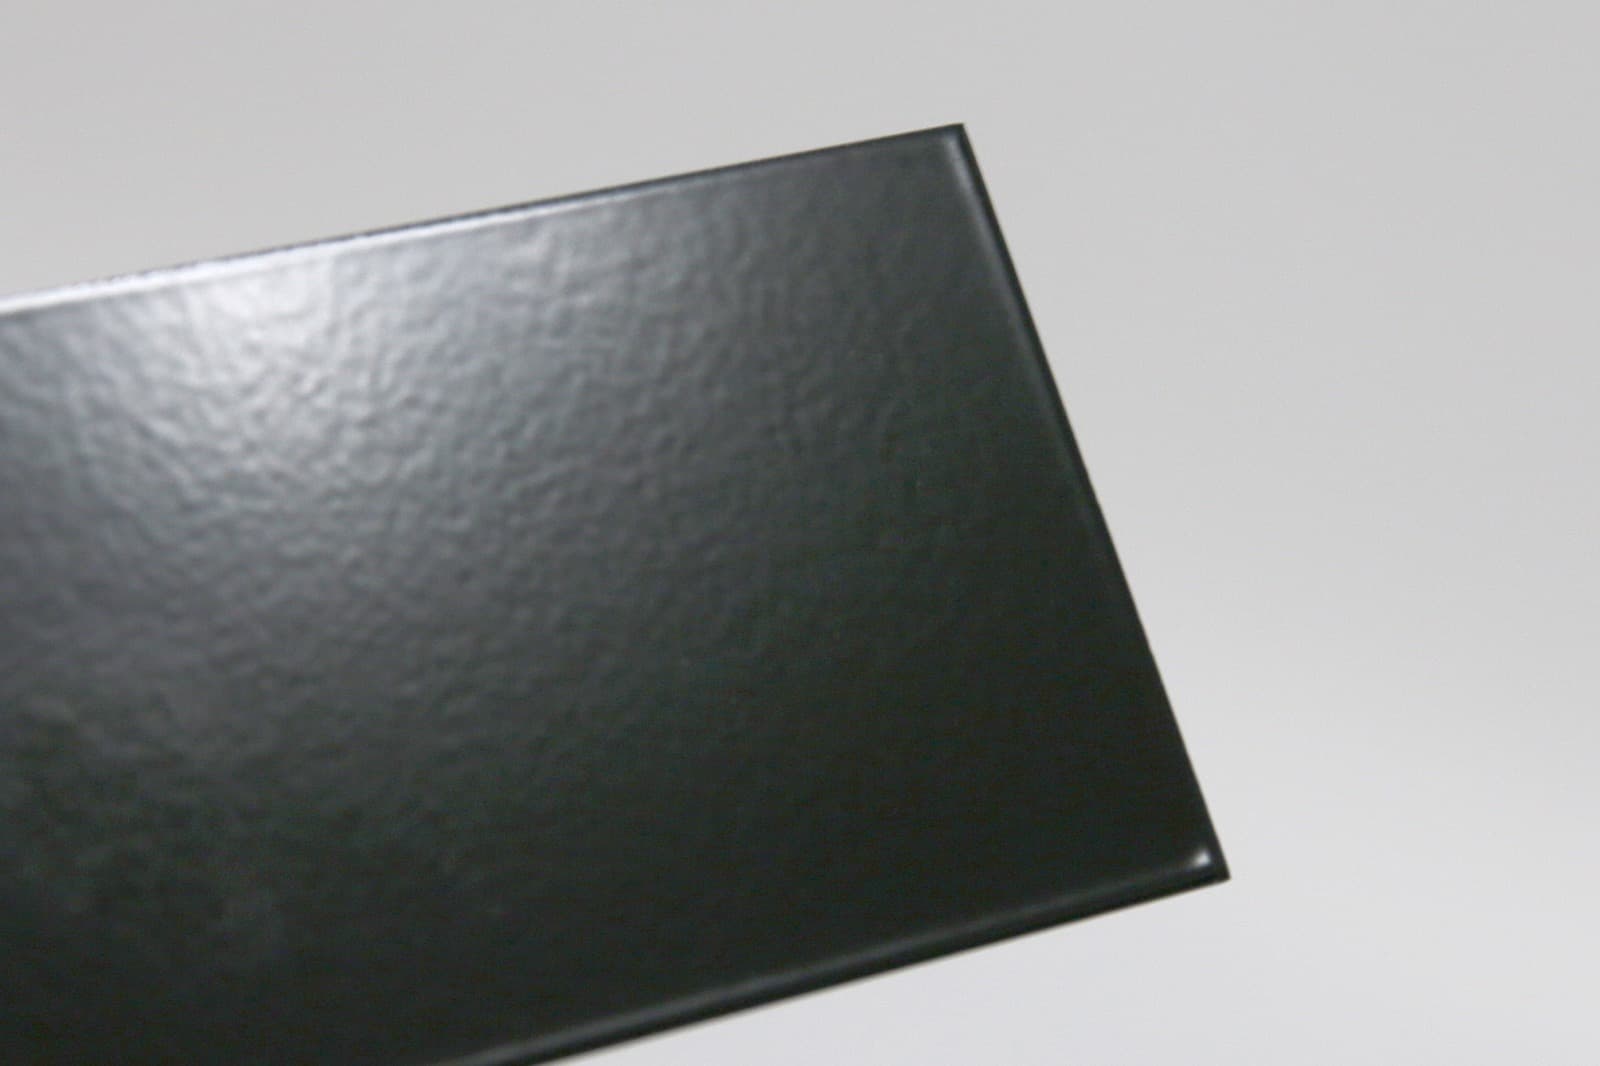 キューブ型レンジフード 照明付き W600×H500 ブラック KB-KC019-12-G162 質感見本。ツヤがあります